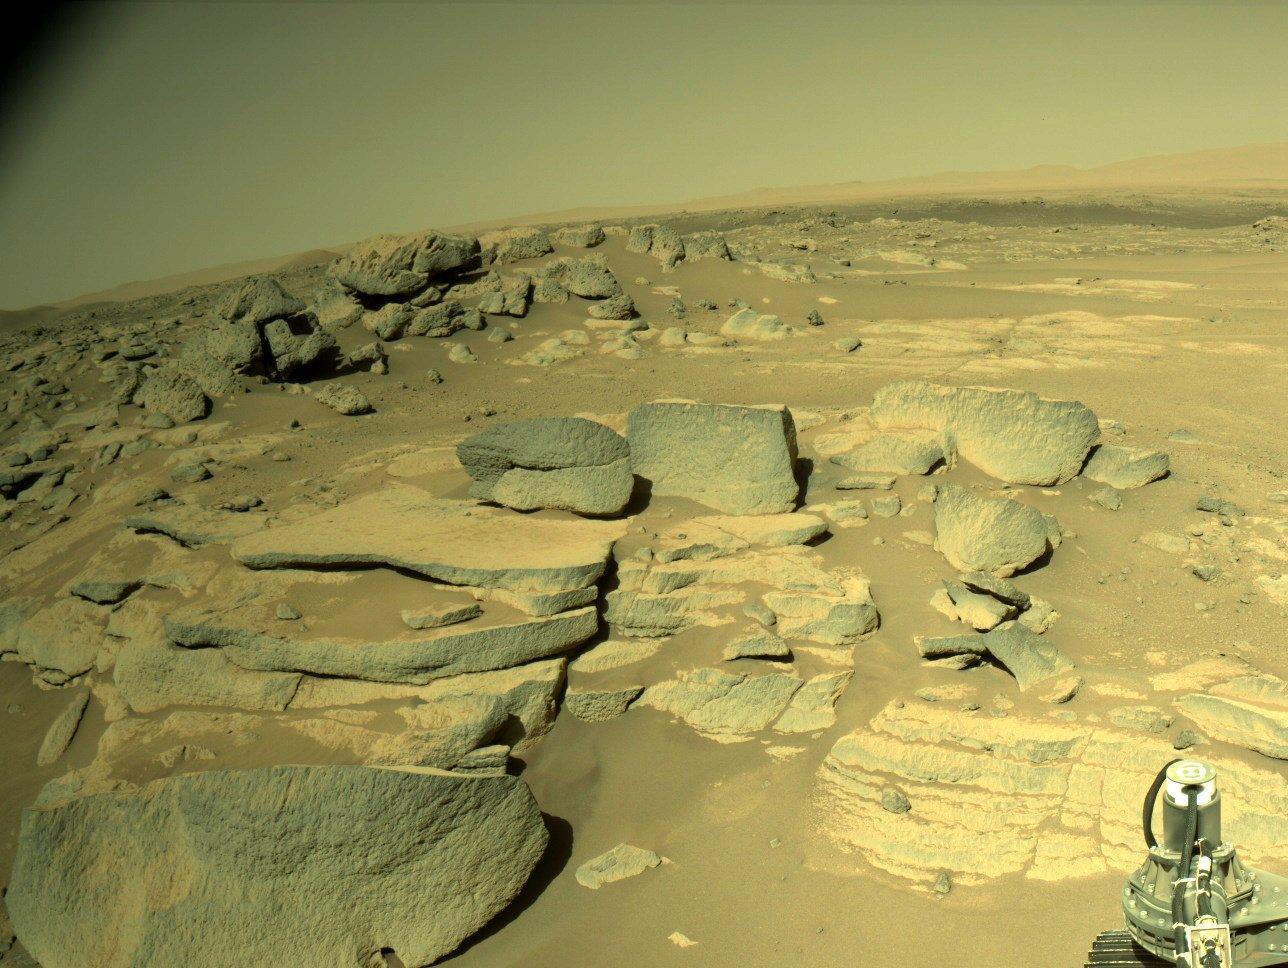 Снимок из Марса